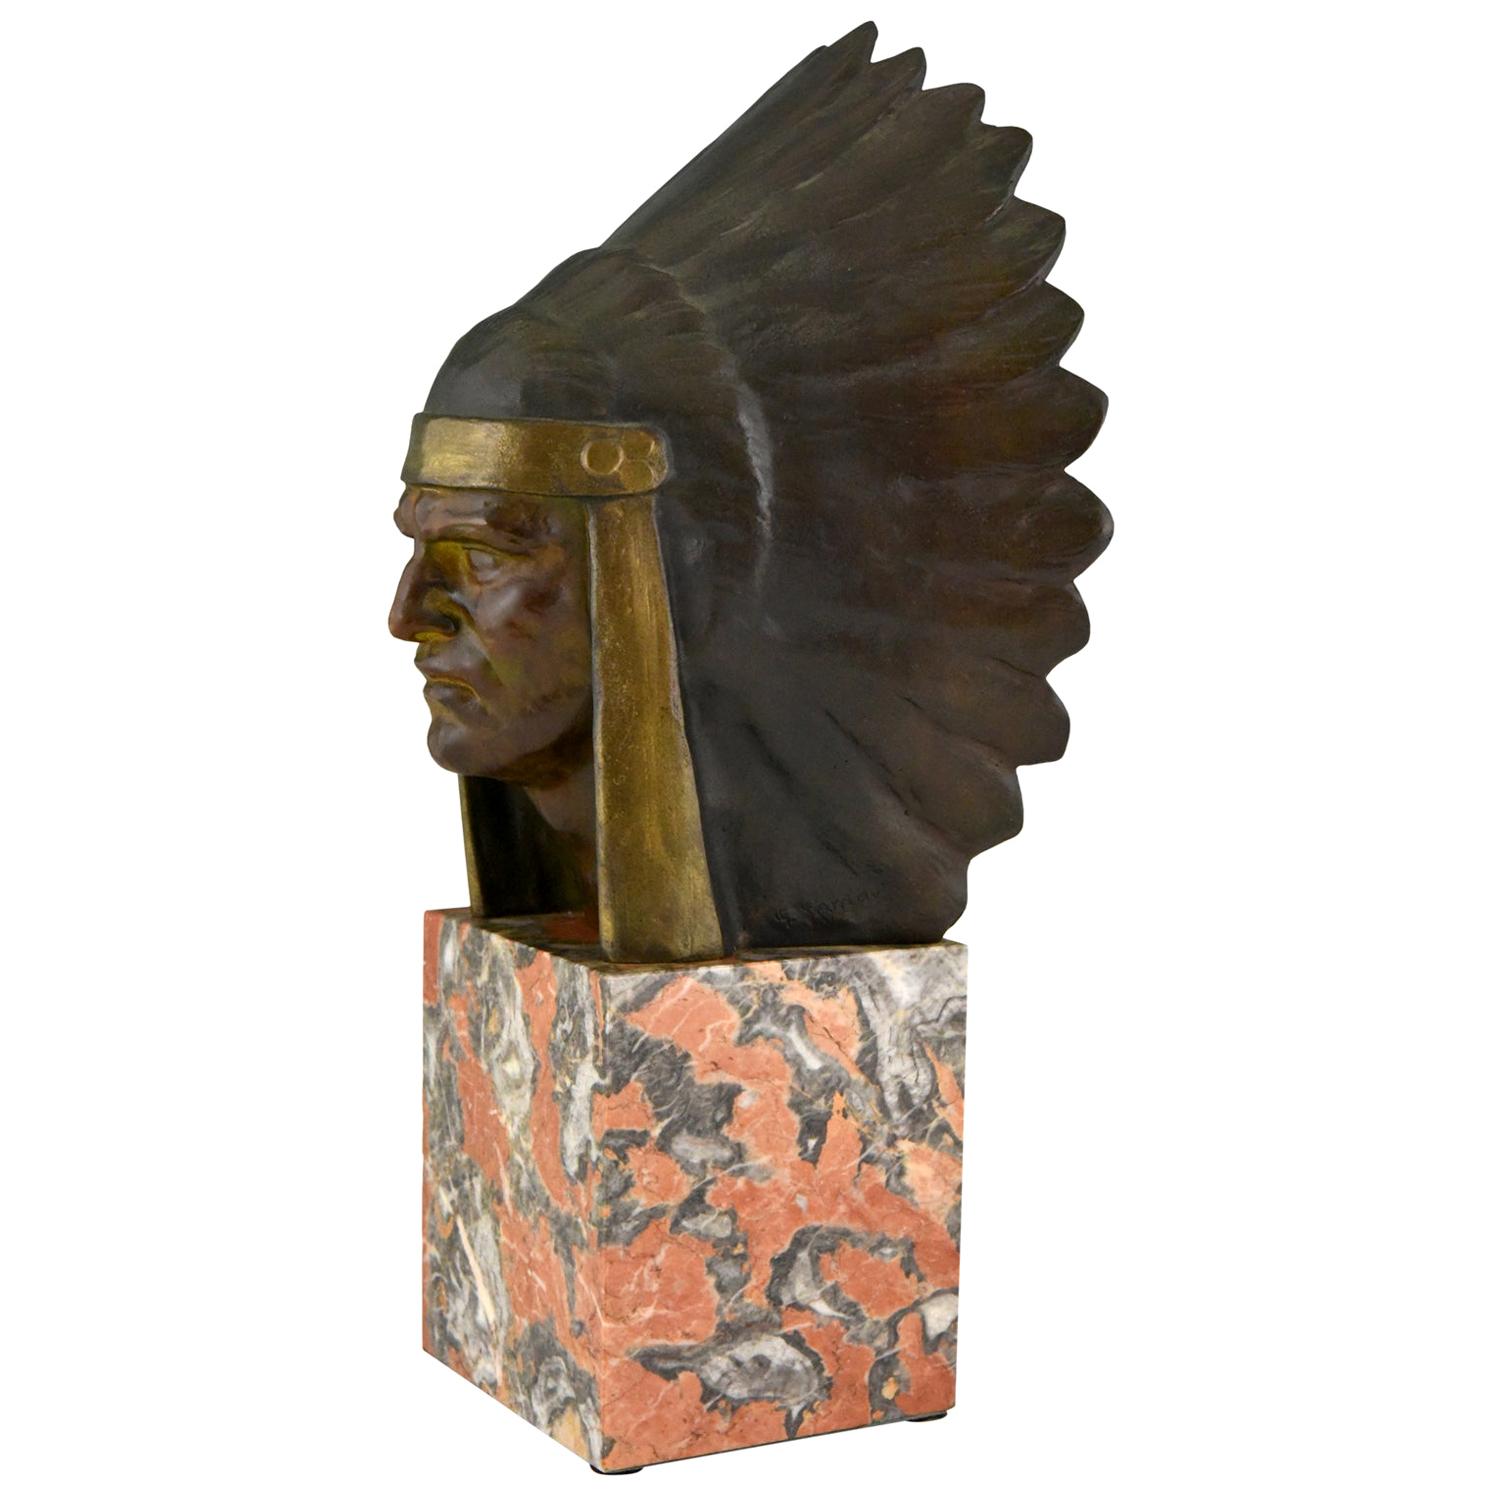 Art Deco Bronze Sculpture of an Indian with Headdress Georges Garreau, 1930